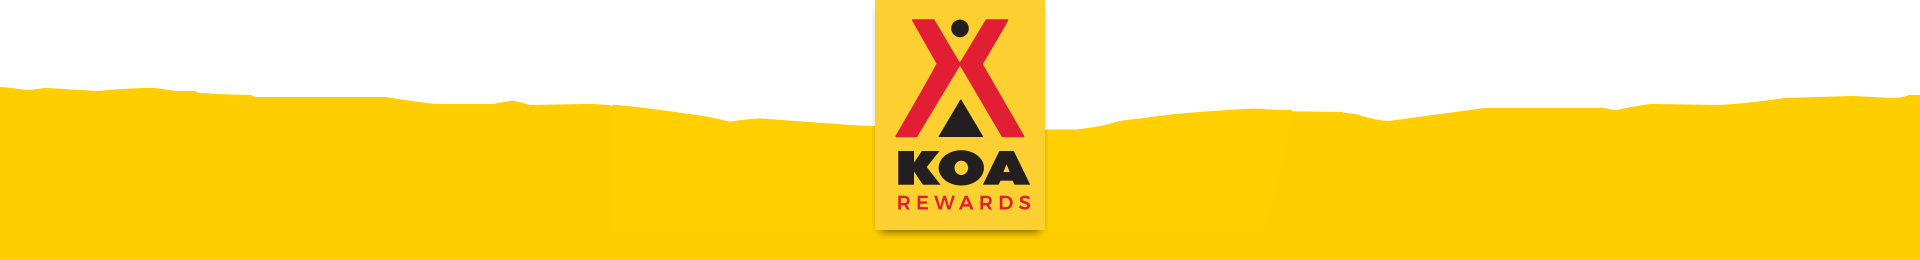 KOA Rewards